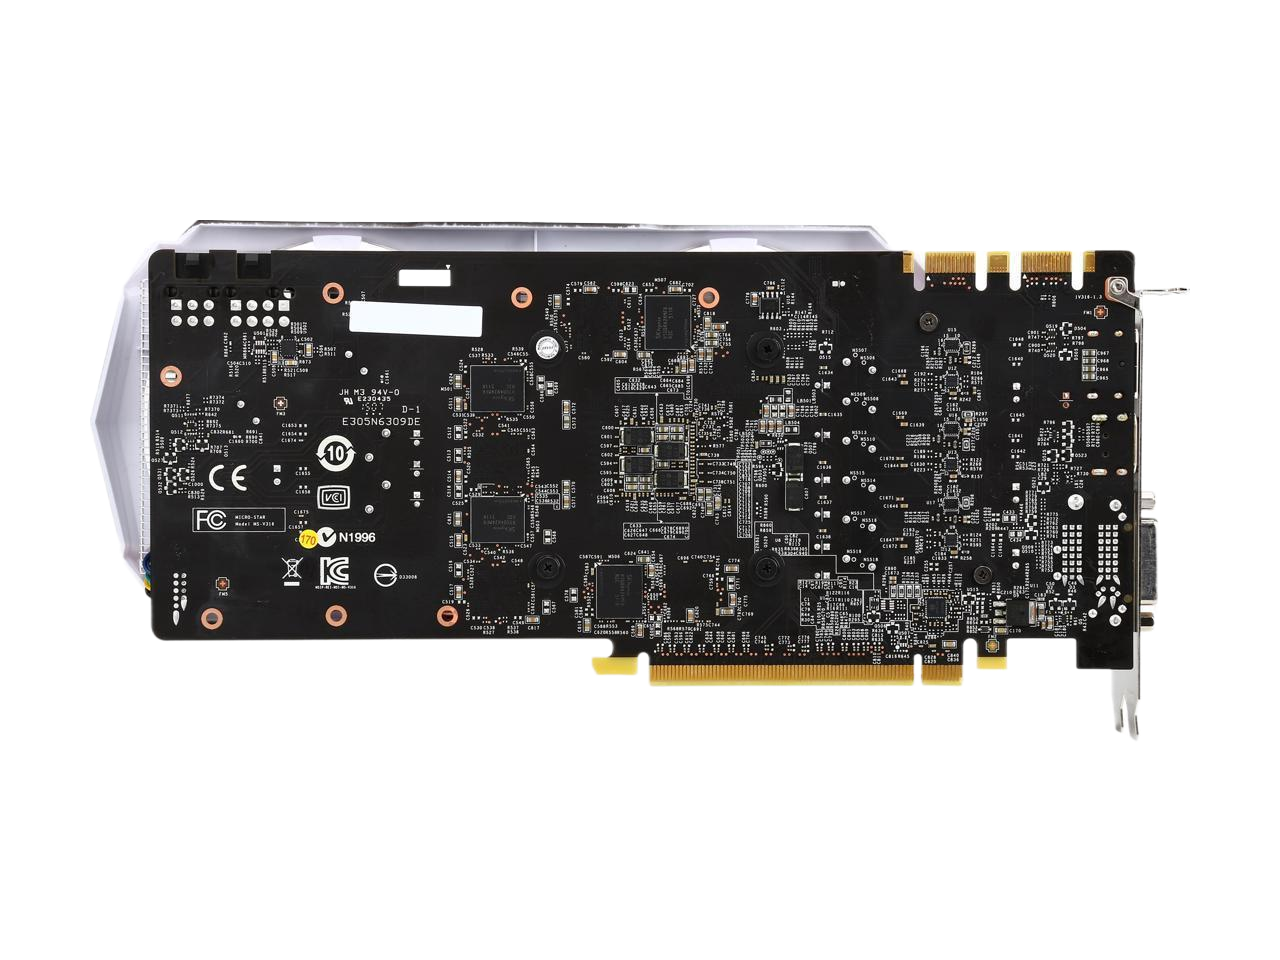 MSI GeForce GTX 980 OC 4GB GDDR5 256-Bit DirectX 12 Video Graphics Card GTX 980 4GD5T OC